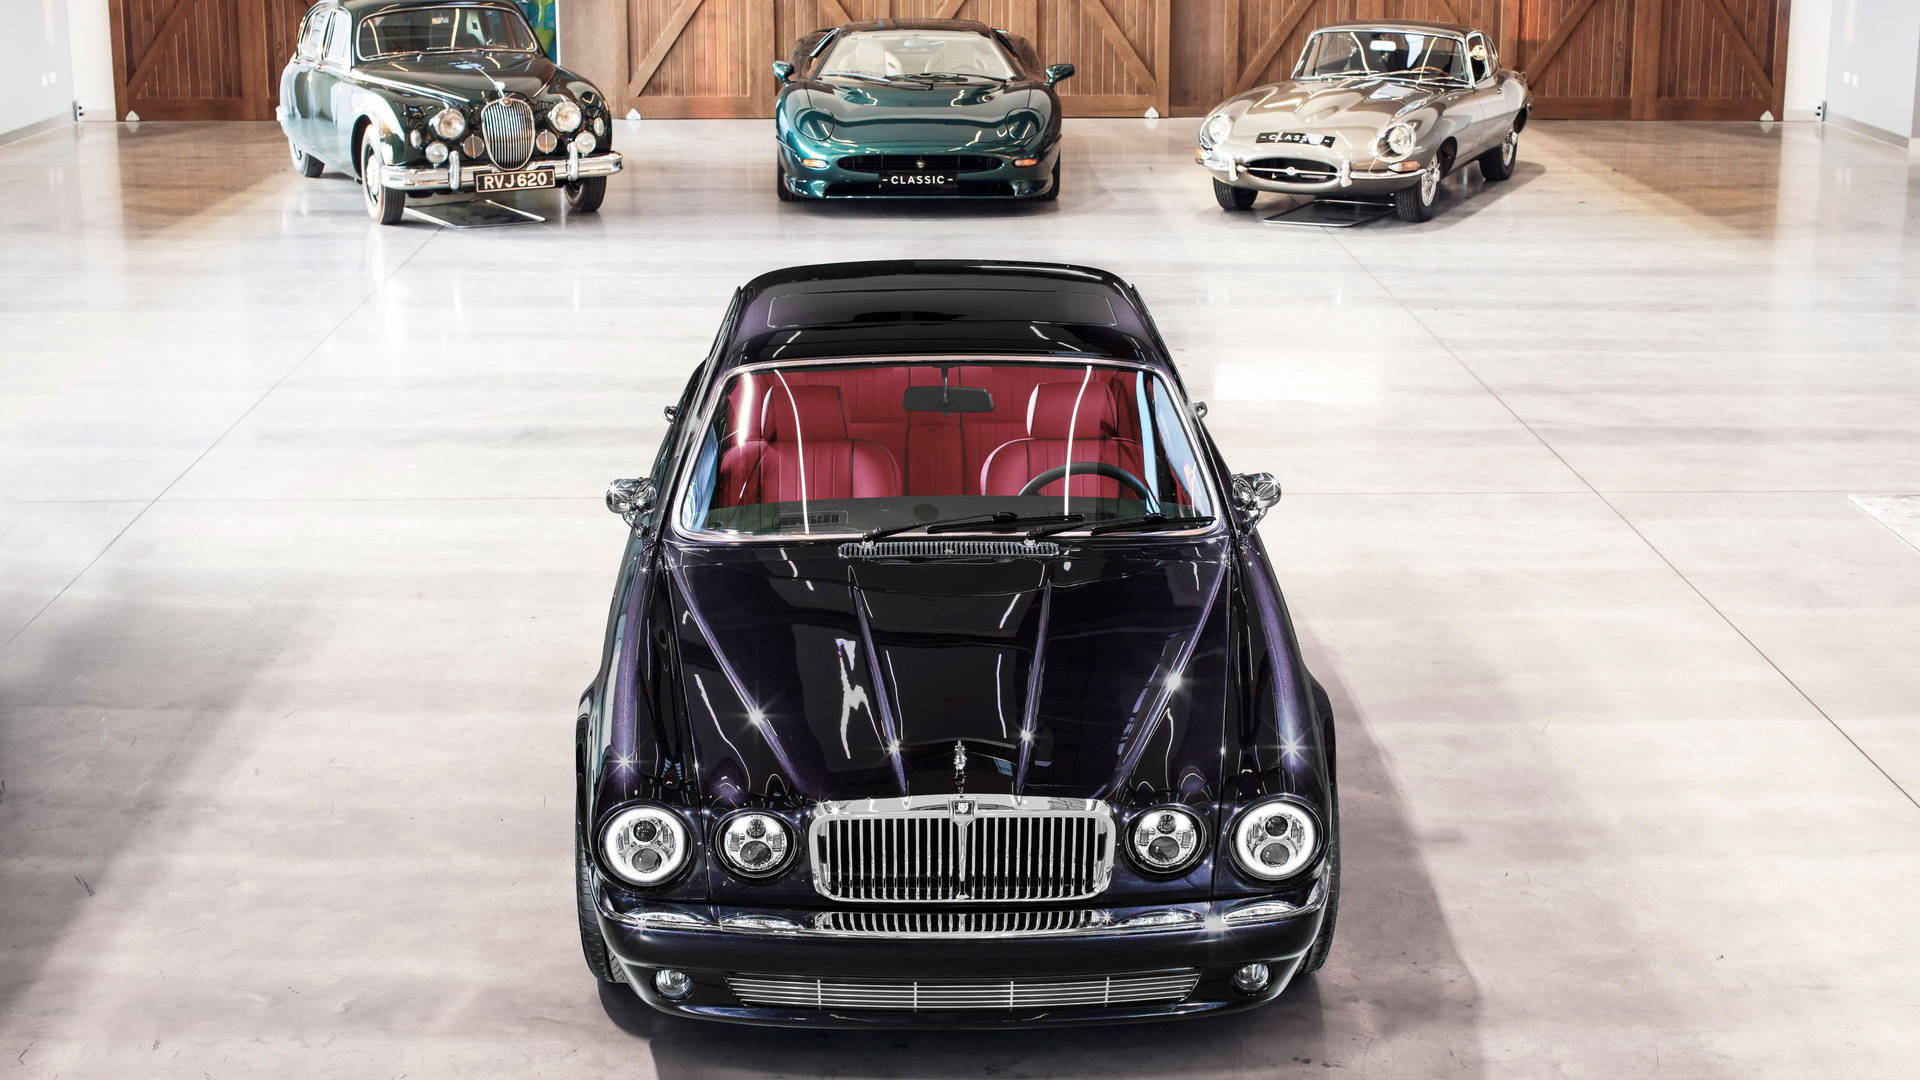 Classic Jaguar Cars Wallpaper